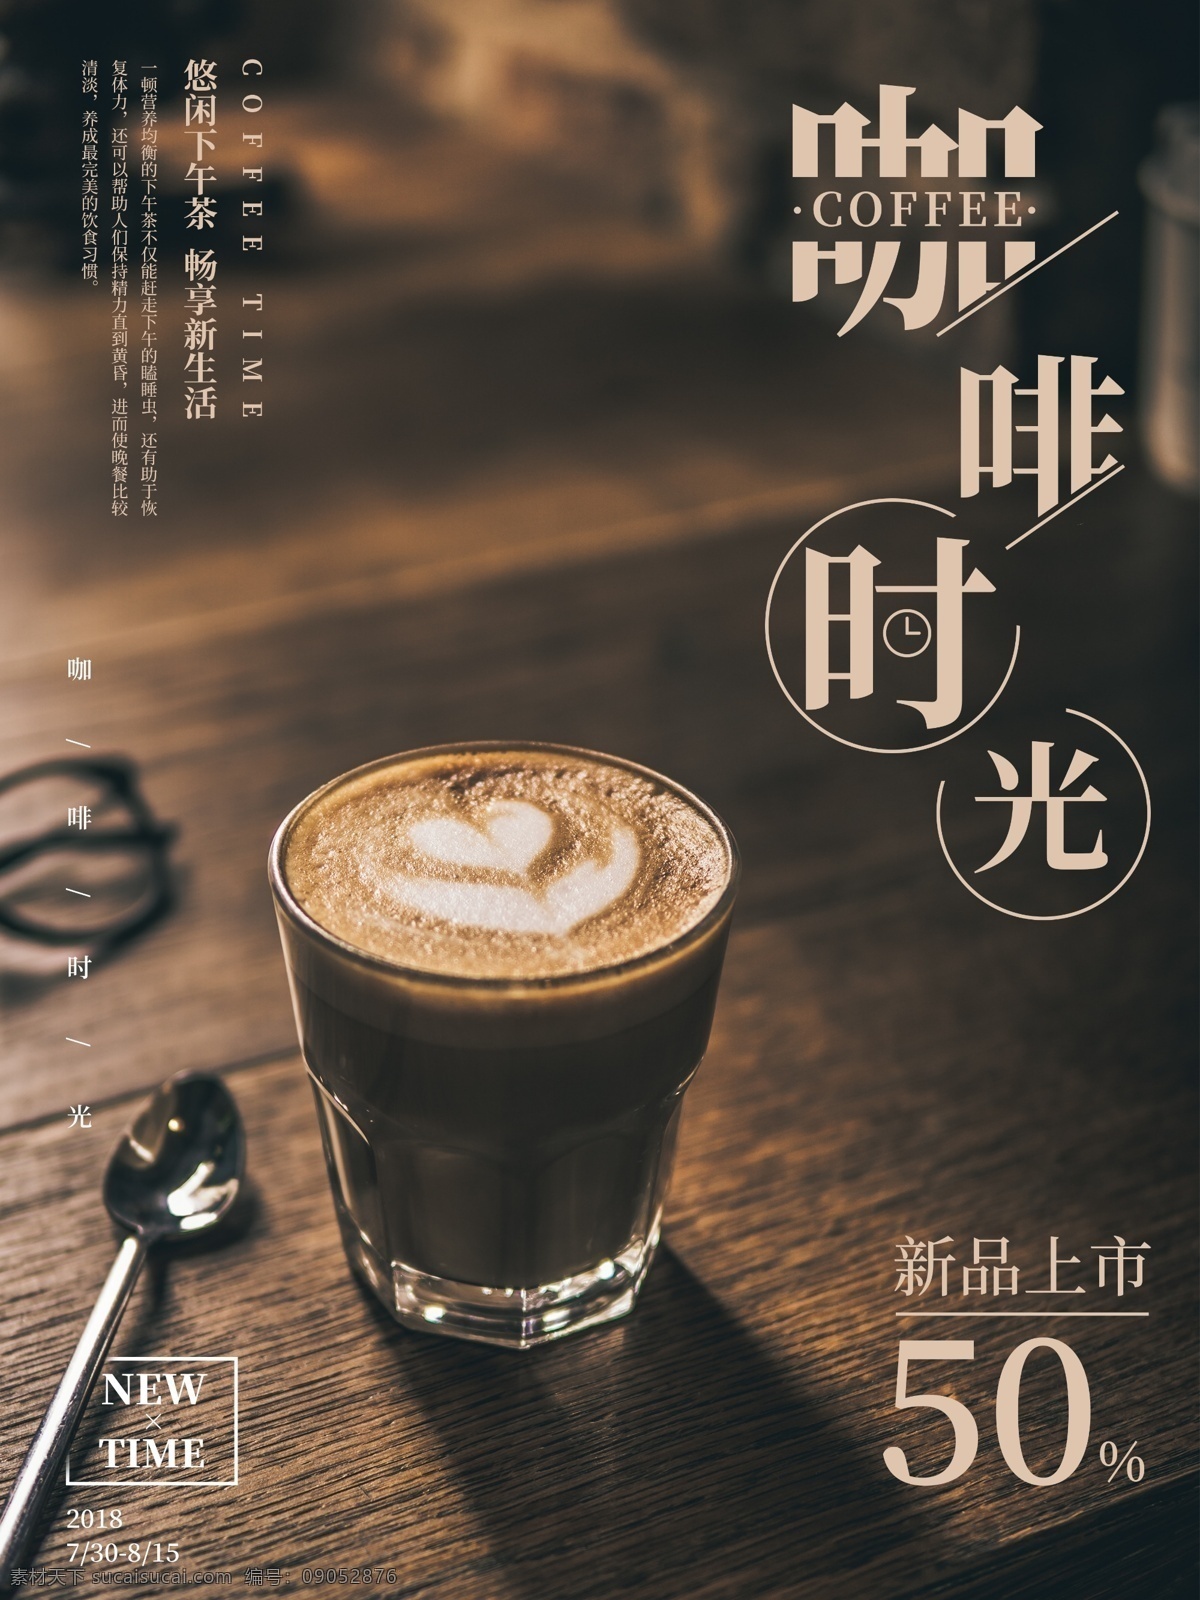 醇香 咖啡 时光 美食 宣传 促销 海报 美食海报 咖啡时光 醇香咖啡